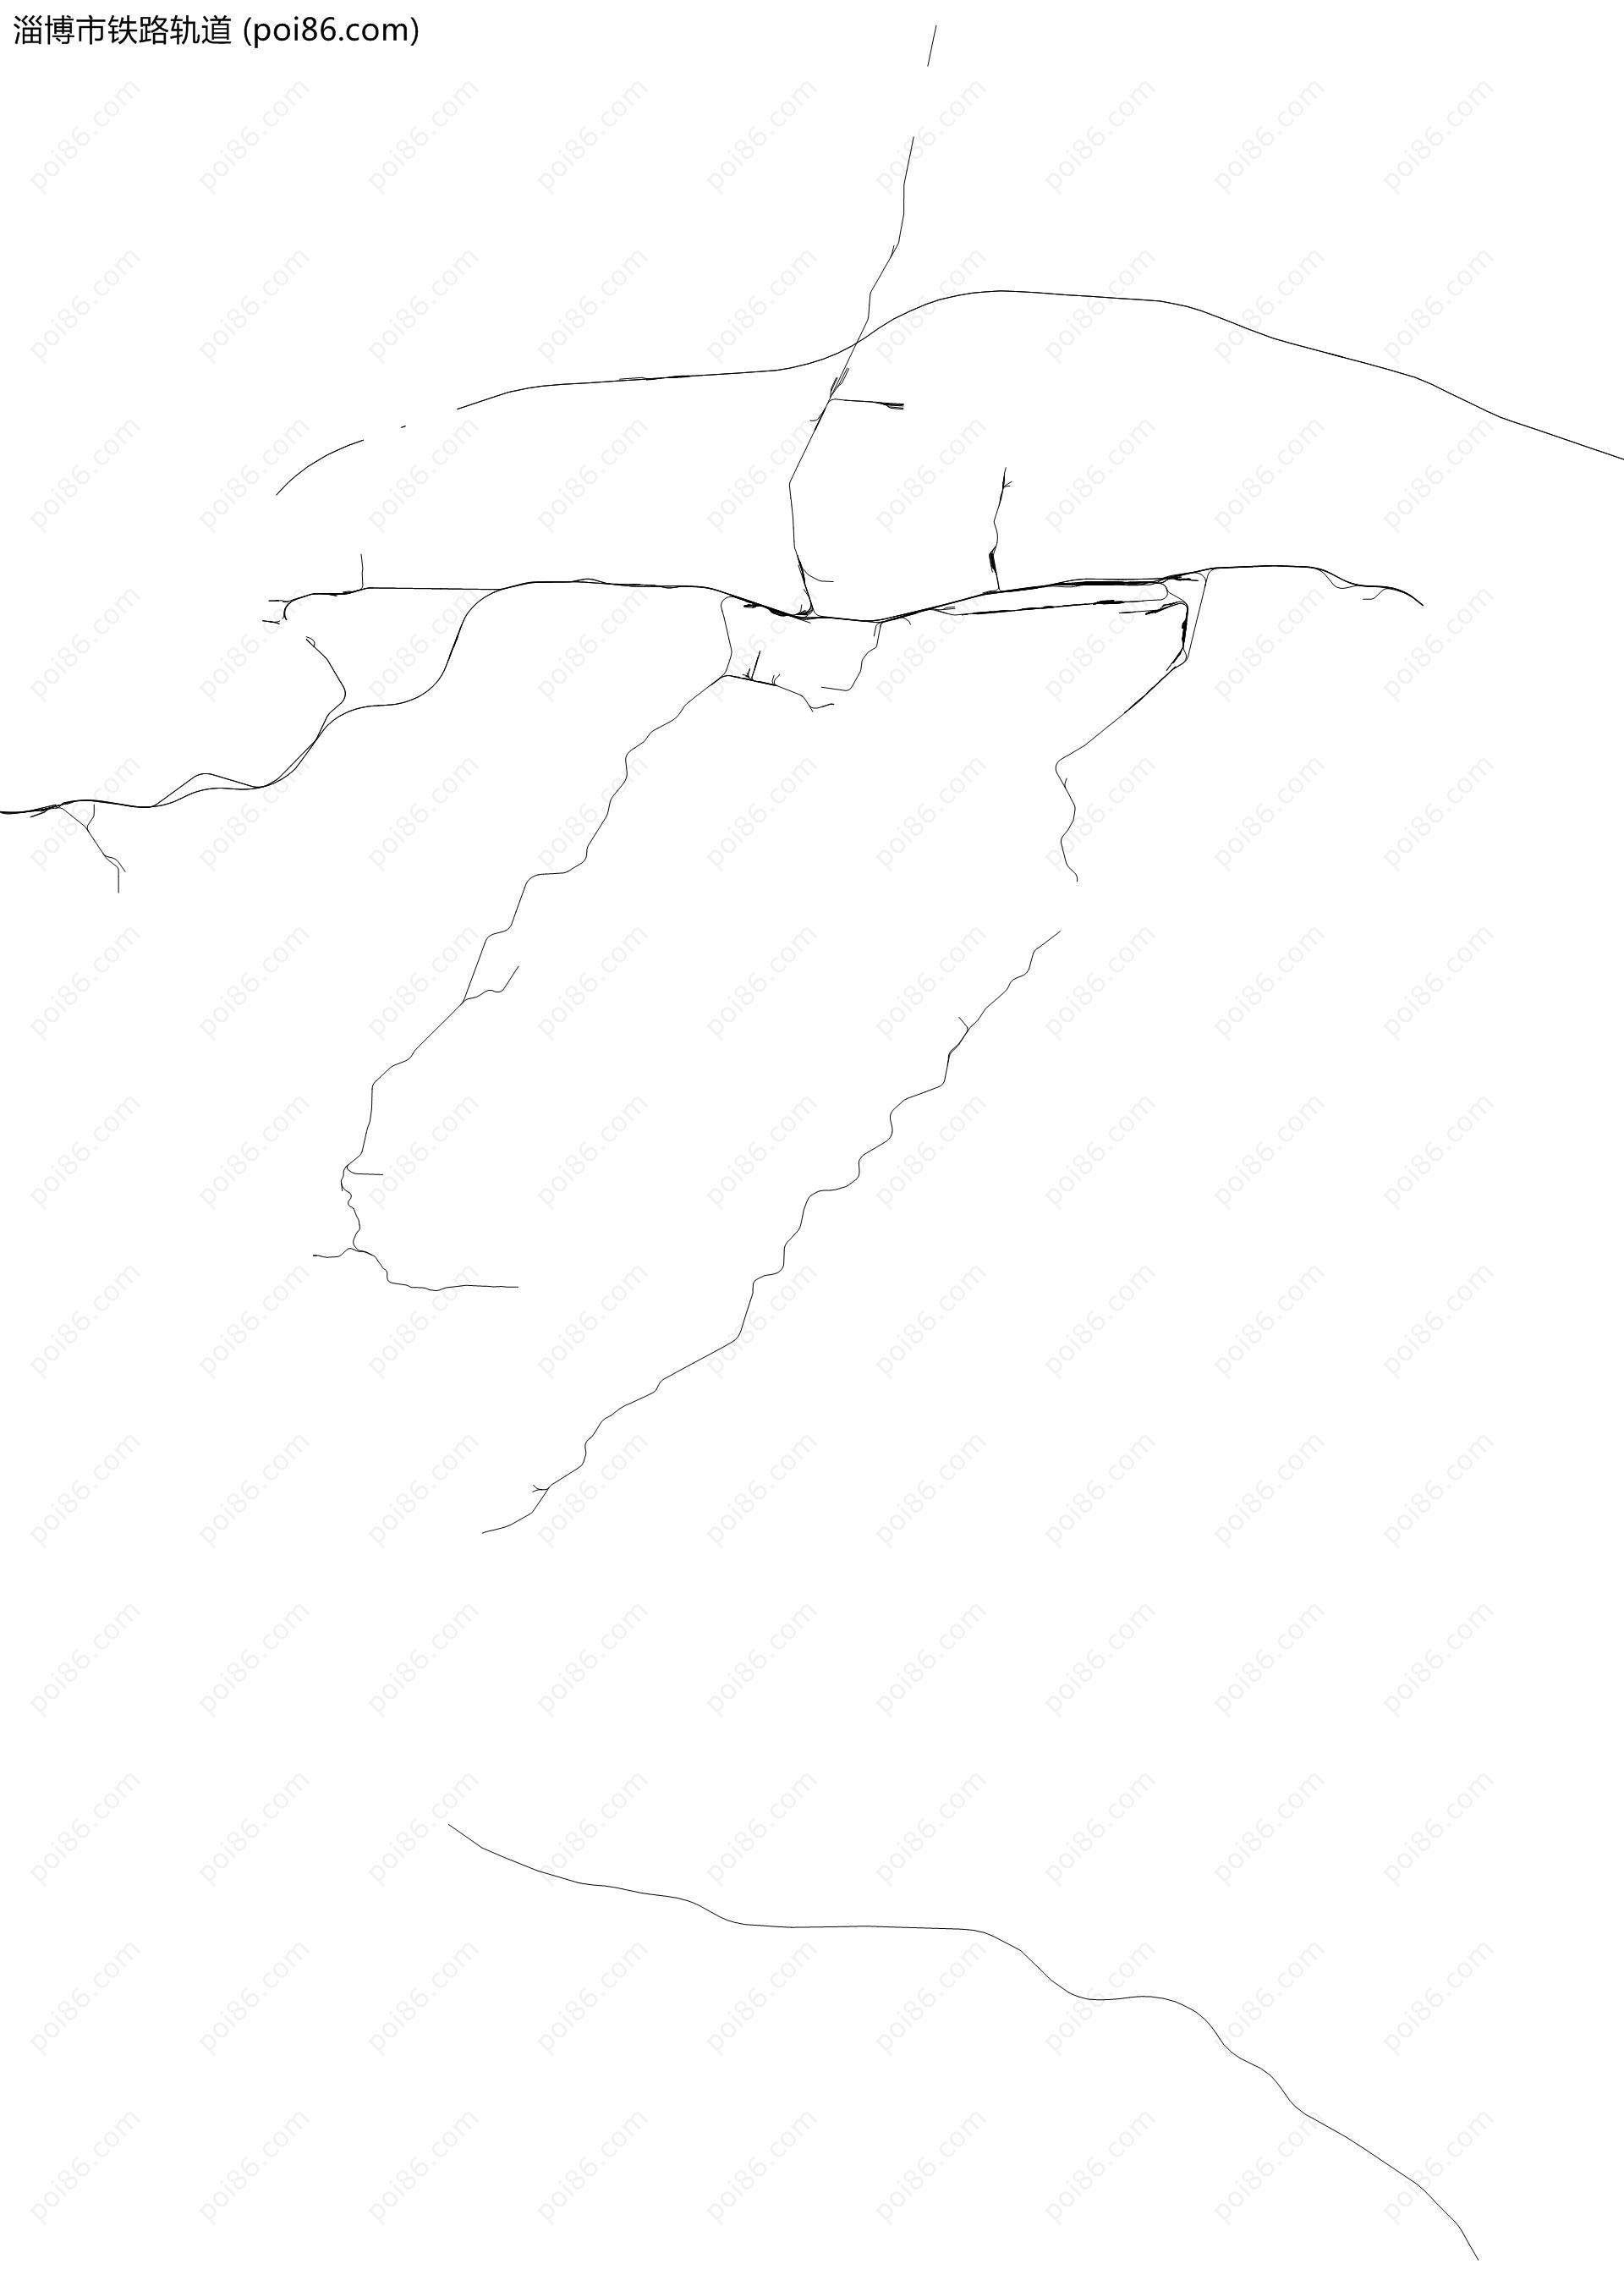 淄博市铁路轨道地图